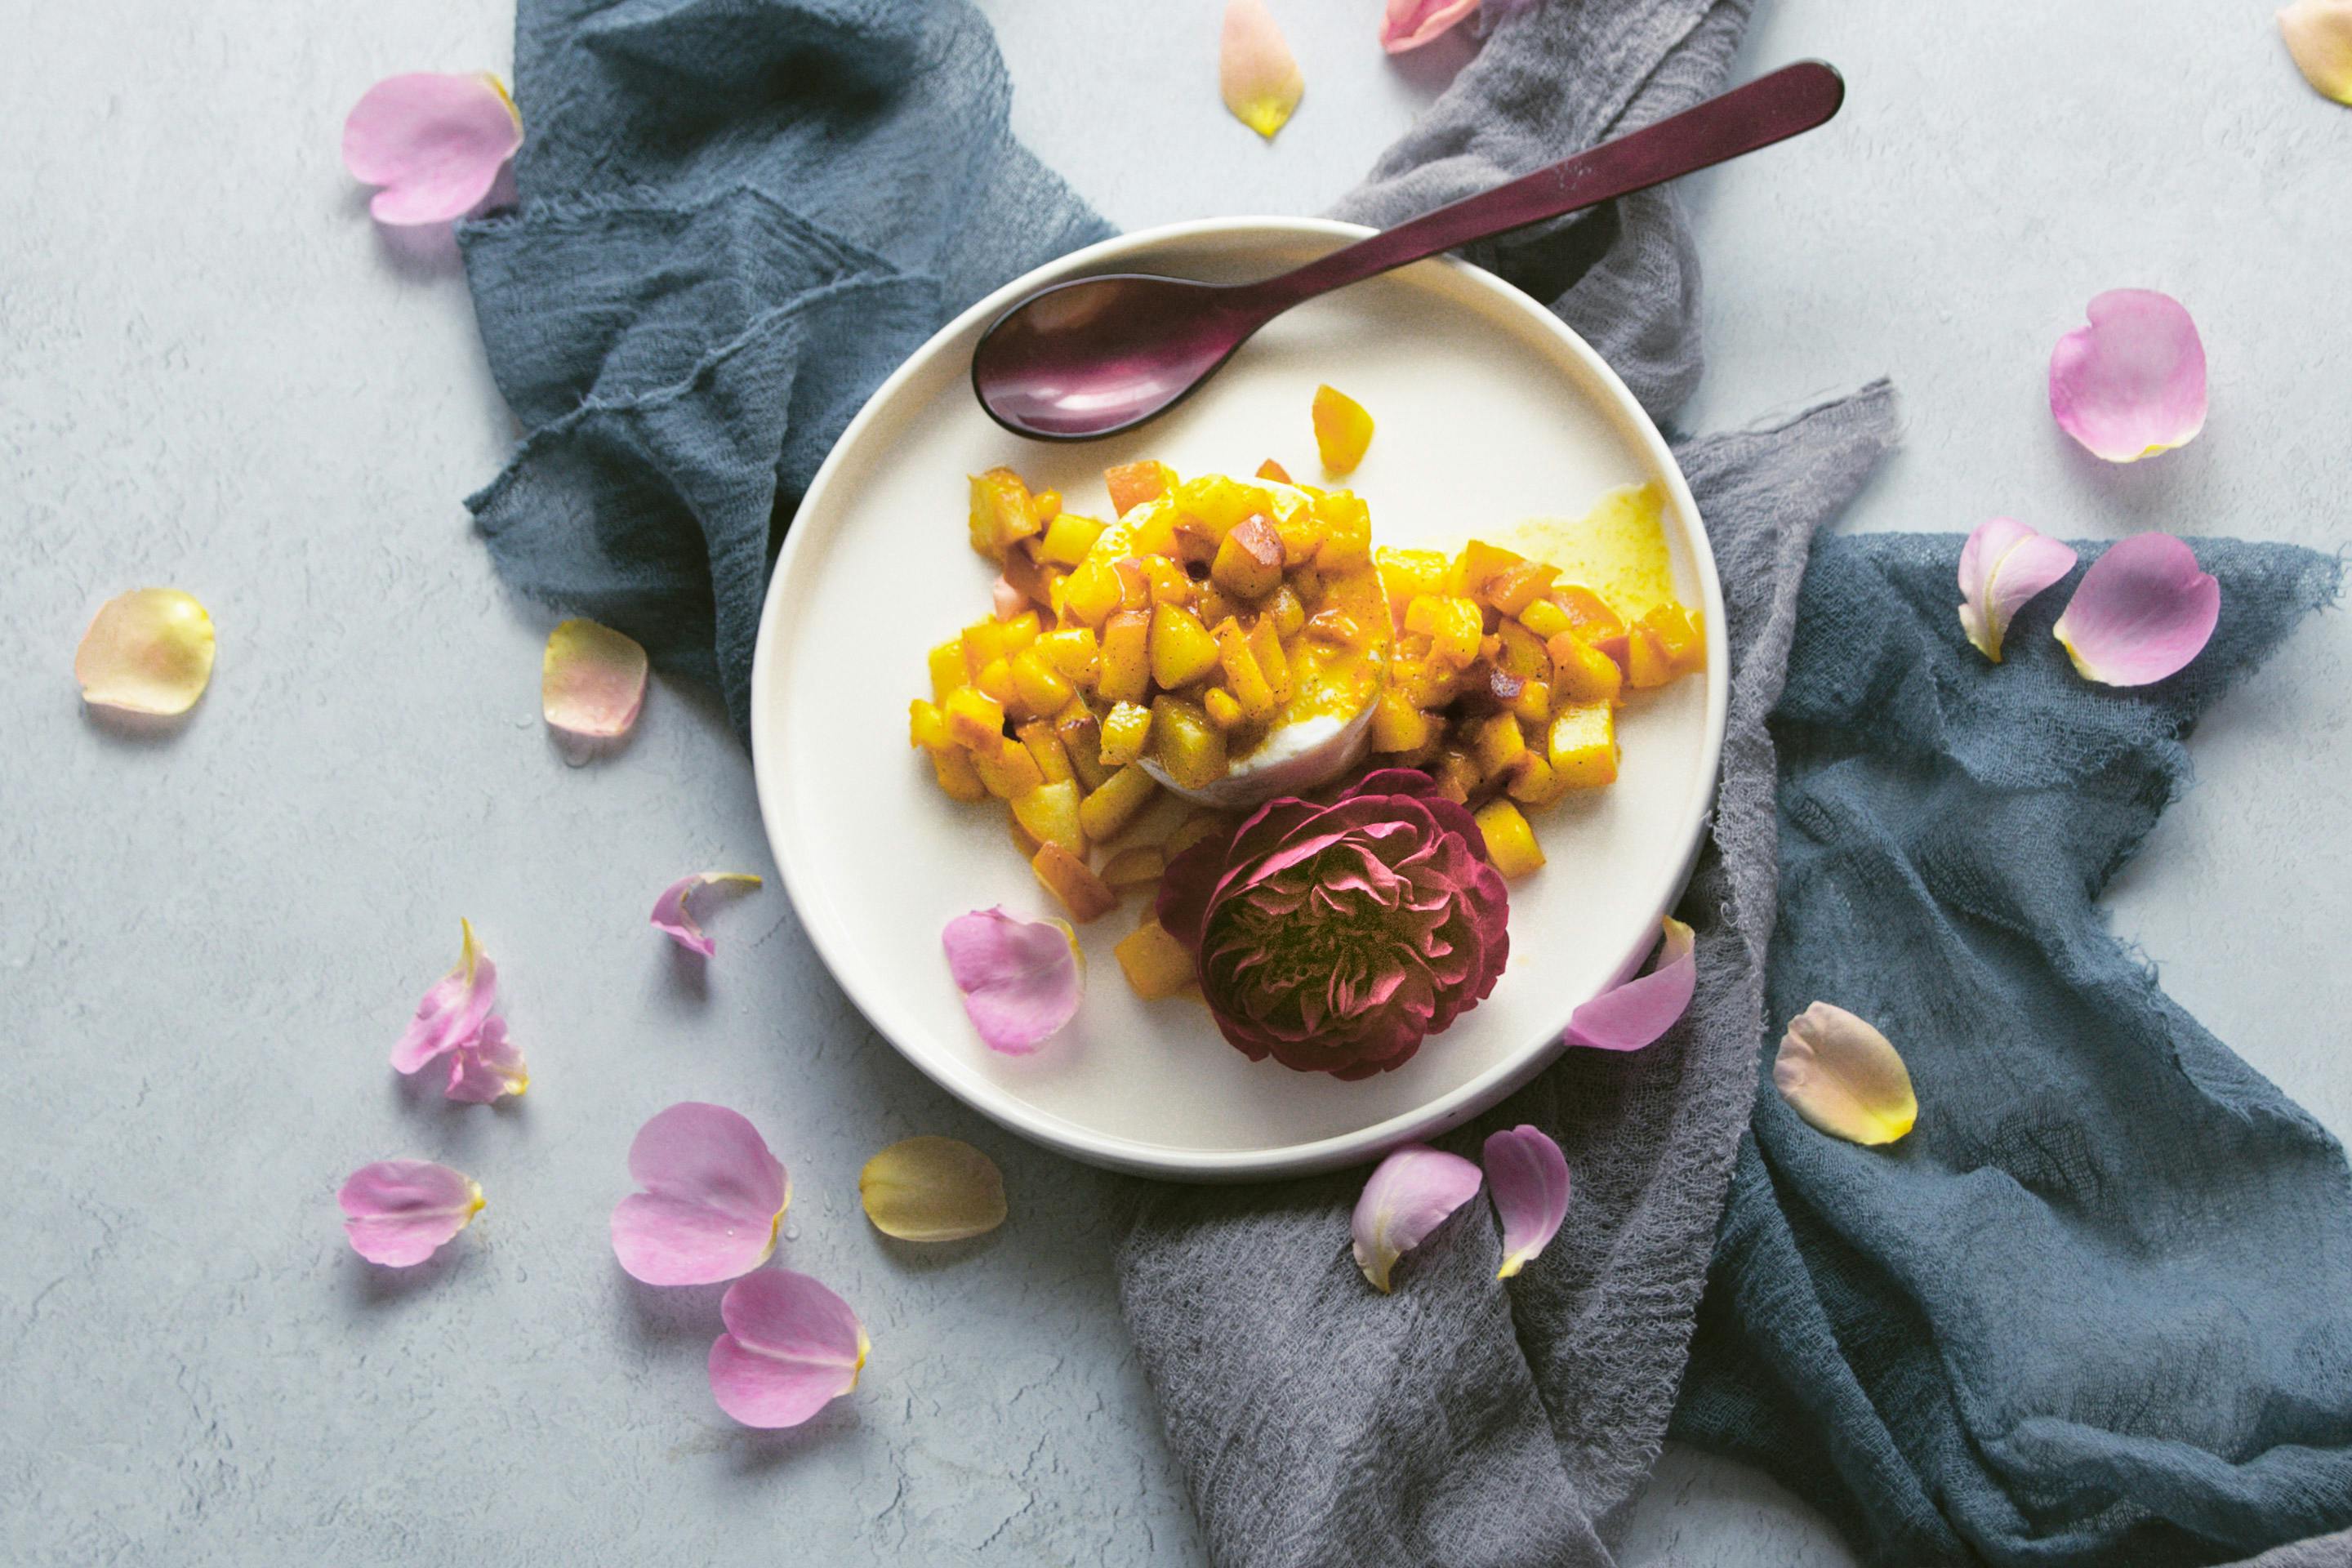 Rosenskyr mit fruchtigen Pfirsichstüchen und Vanillezucker mit Rosenblüte und -blättern auf einem hellen Teller angerichtet